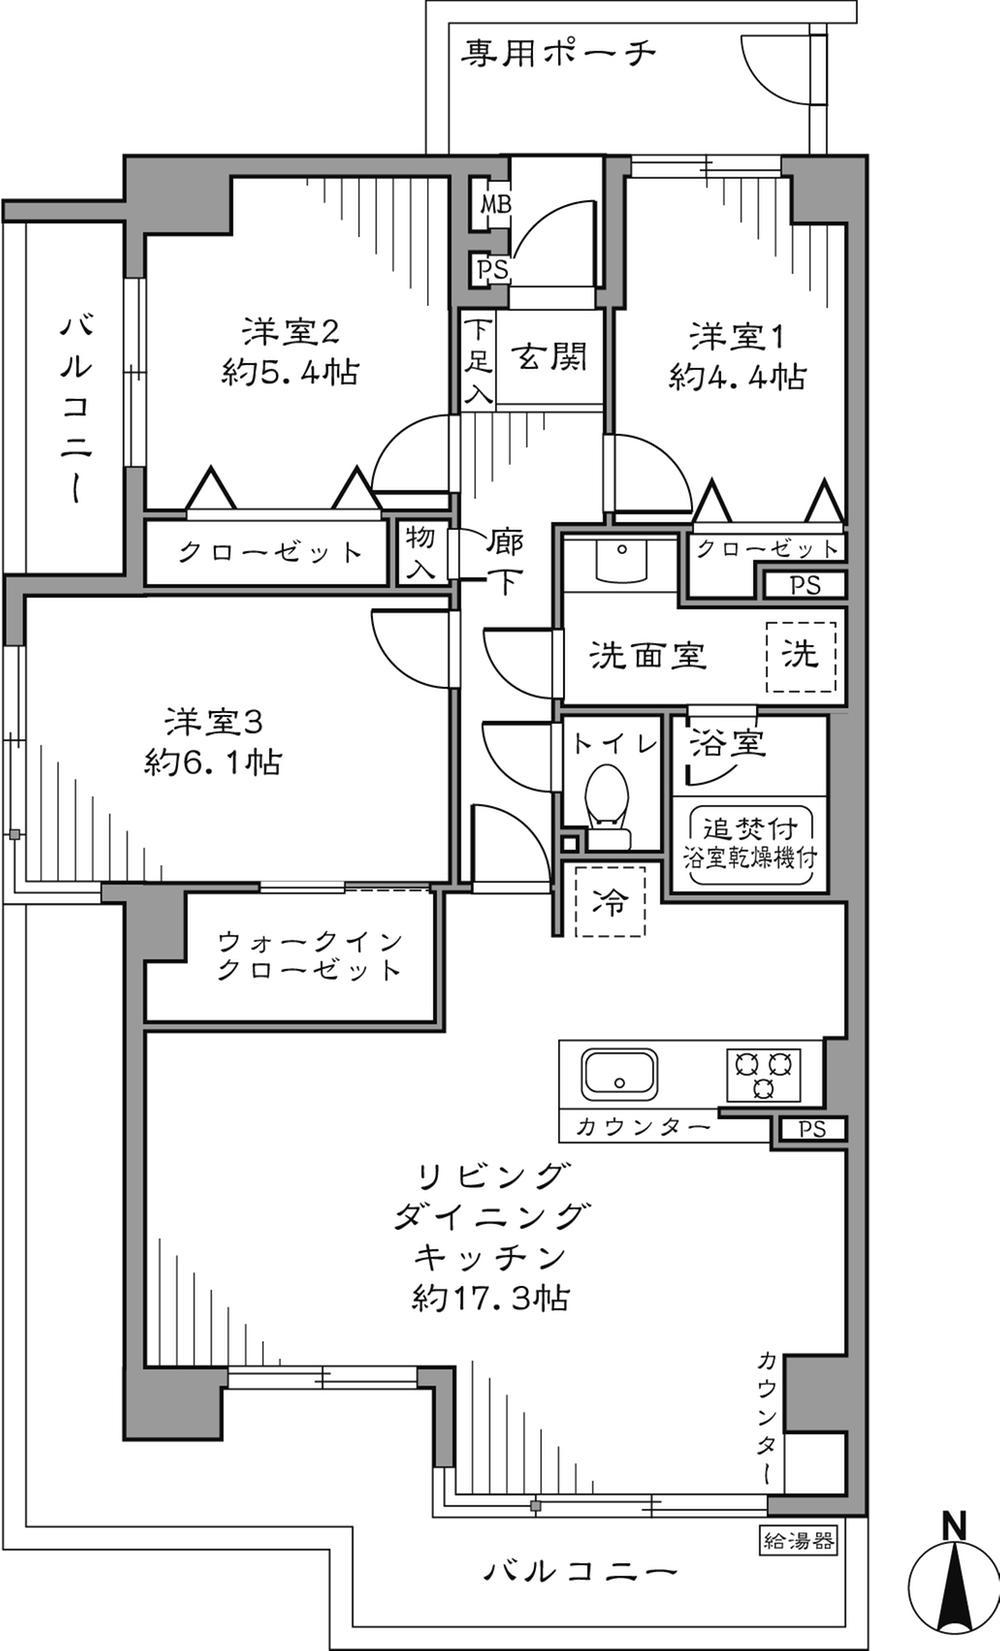 Floor plan. 3LDK + WIC 32,800,000 yen Occupied area 73.57 sq m